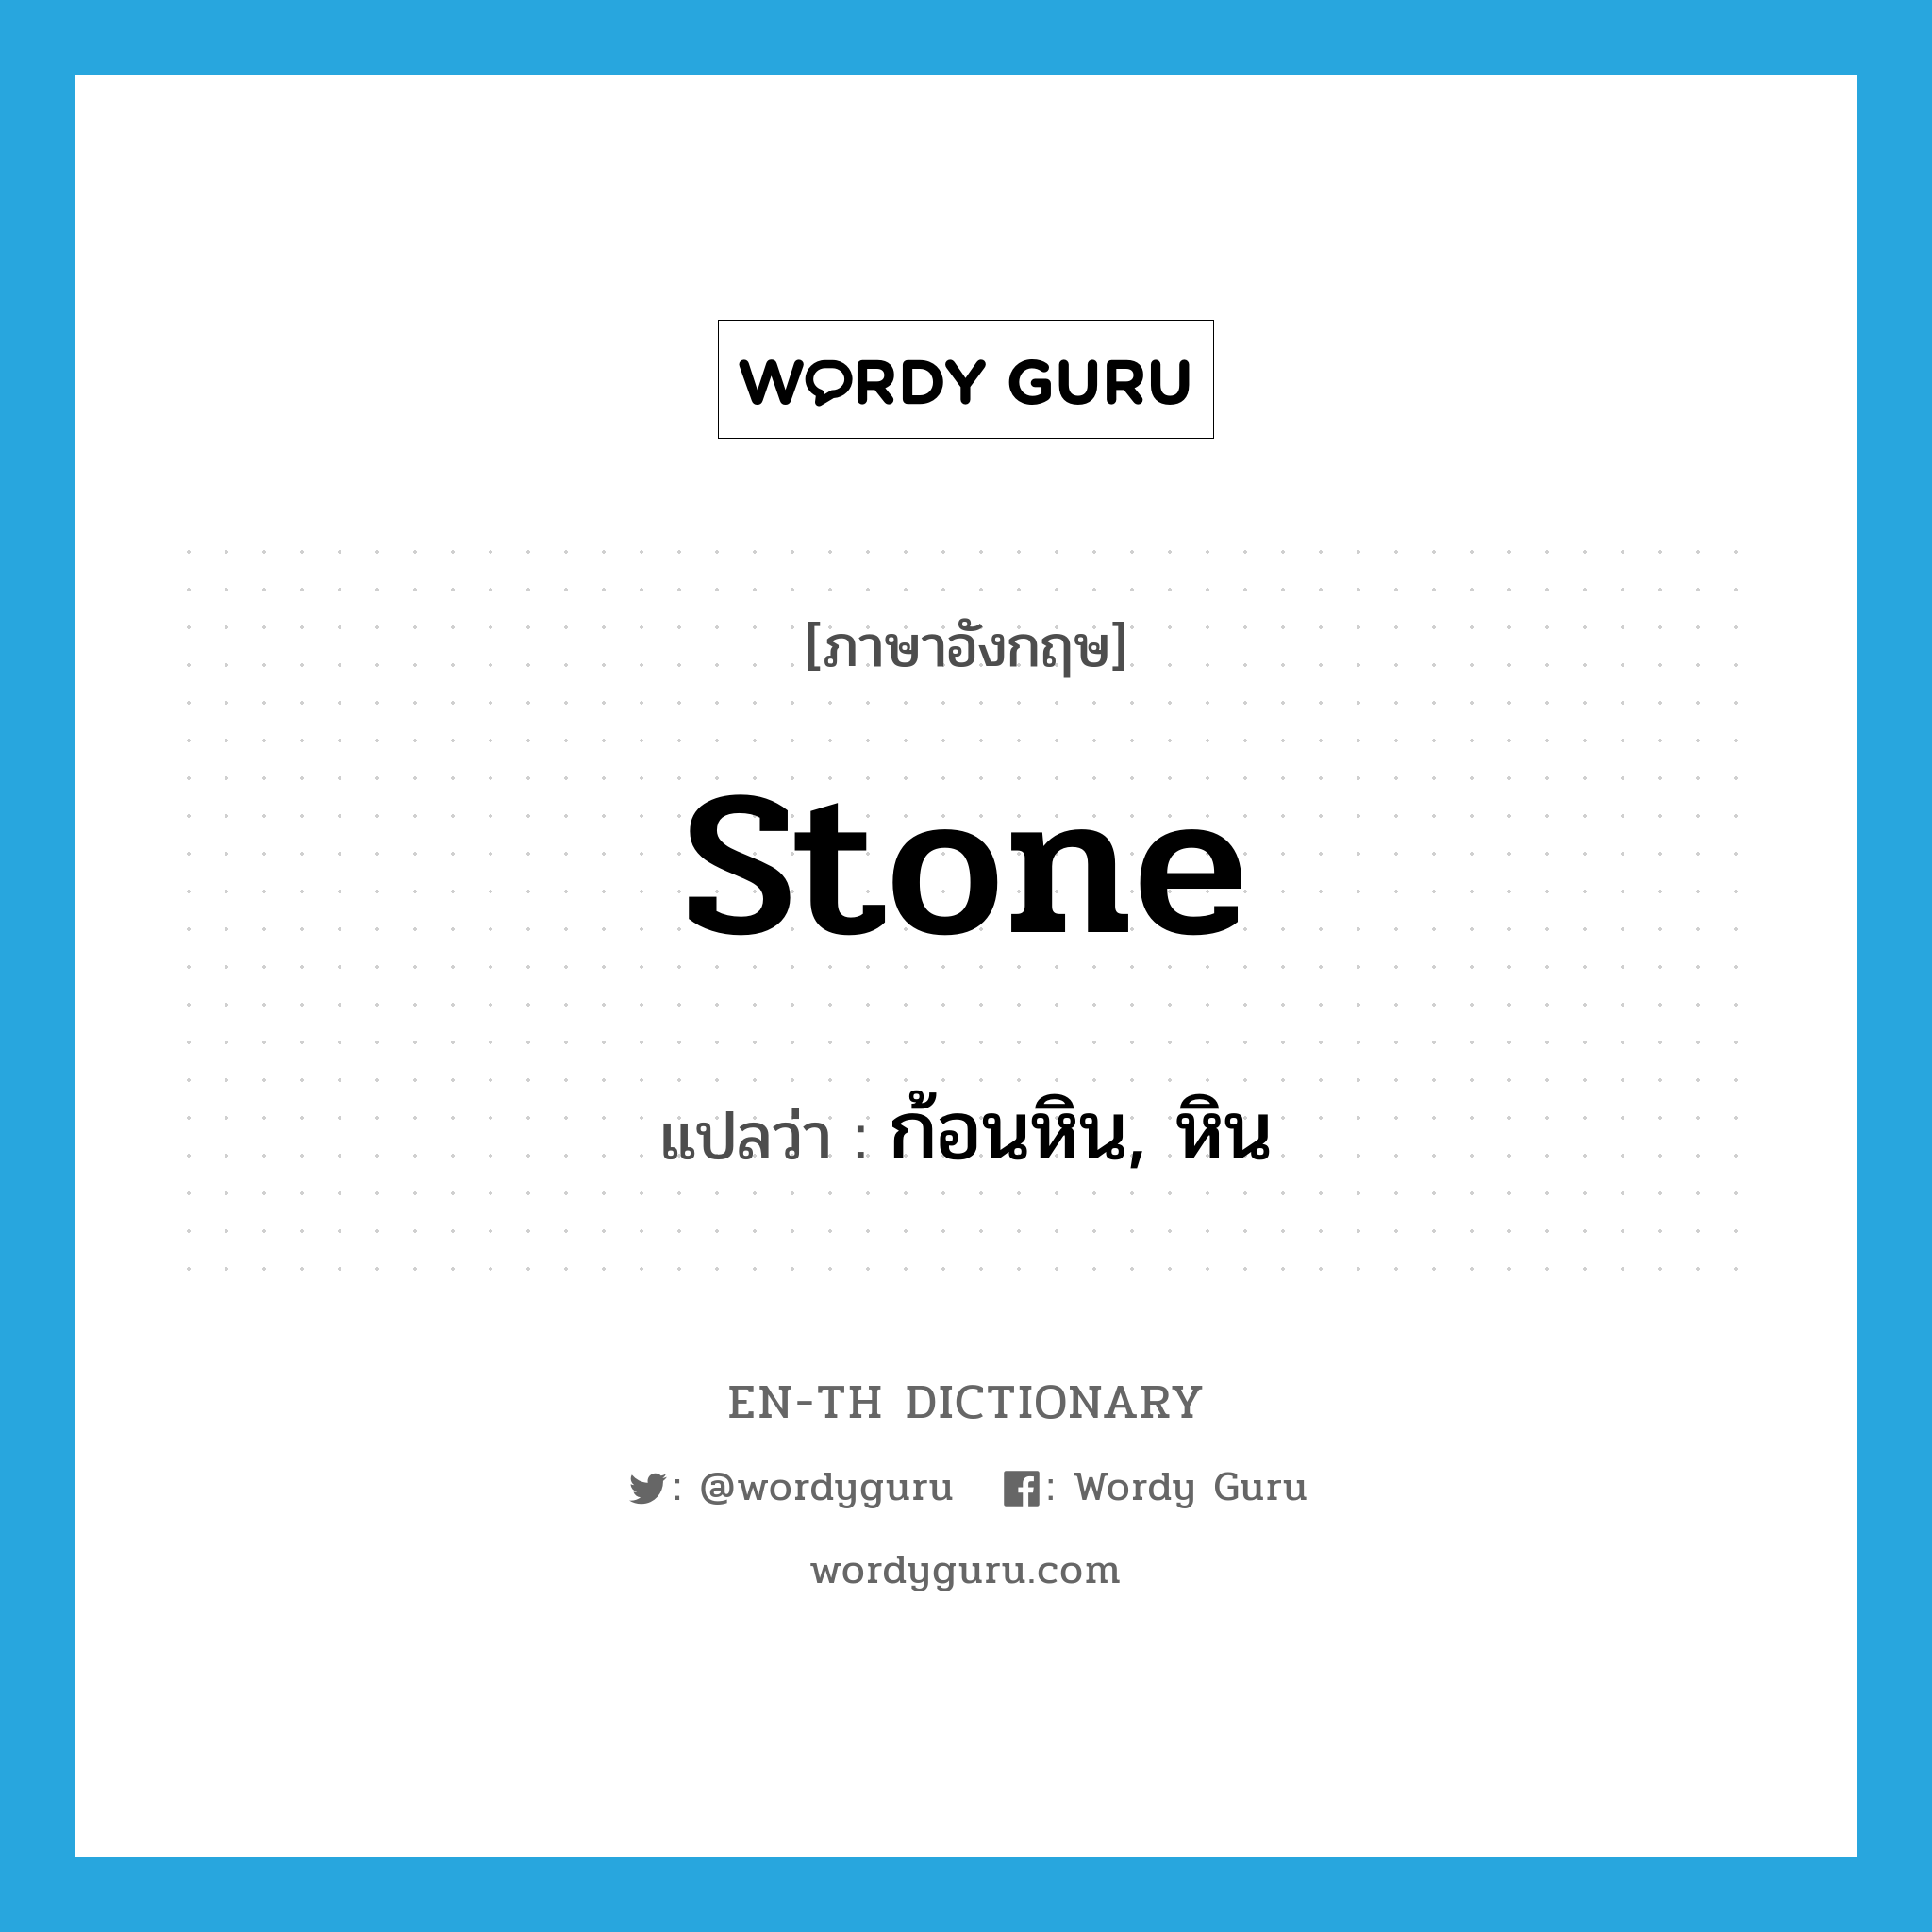 stone แปลว่า?, คำศัพท์ภาษาอังกฤษ stone แปลว่า ก้อนหิน, หิน ประเภท N หมวด N